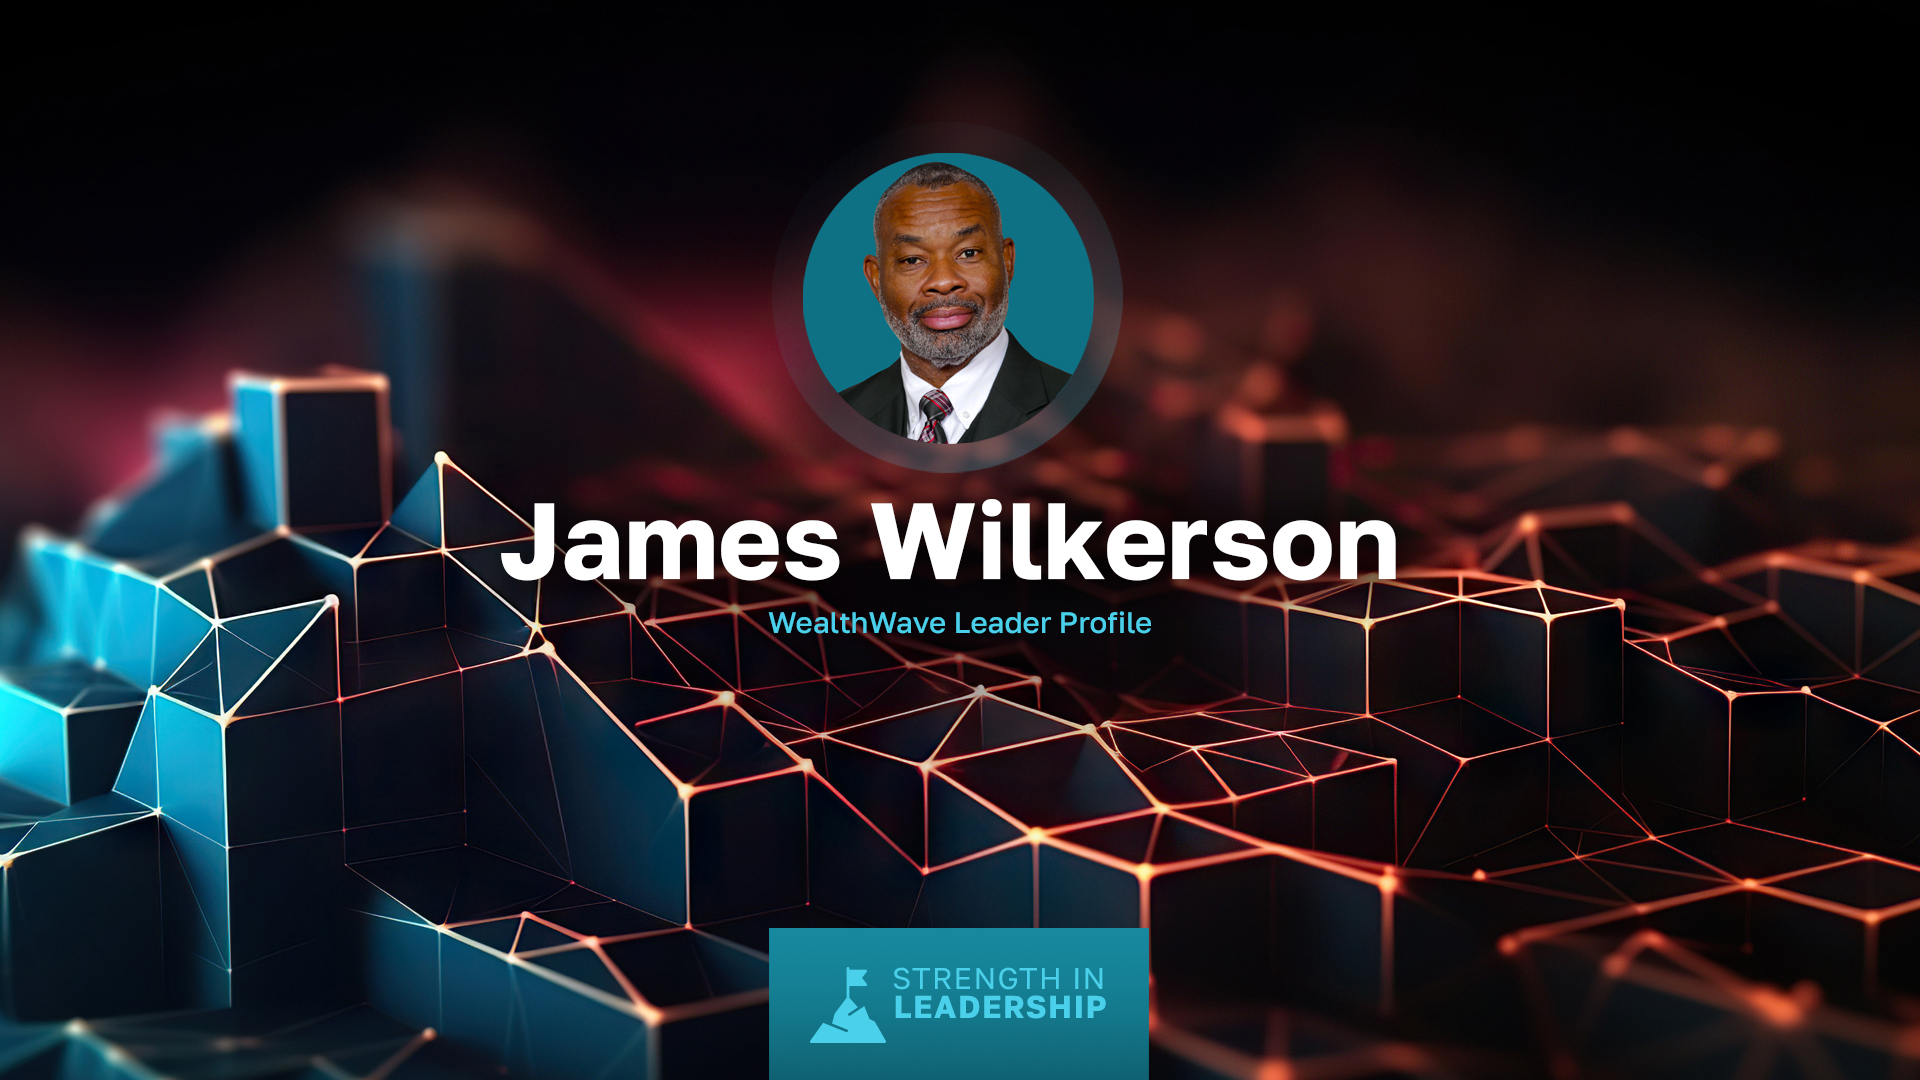 Hồ sơ lãnh đạo: James Wilkerson— Từ Sĩ quan Hải quân đến Lãnh đạo Ngành Tài chính